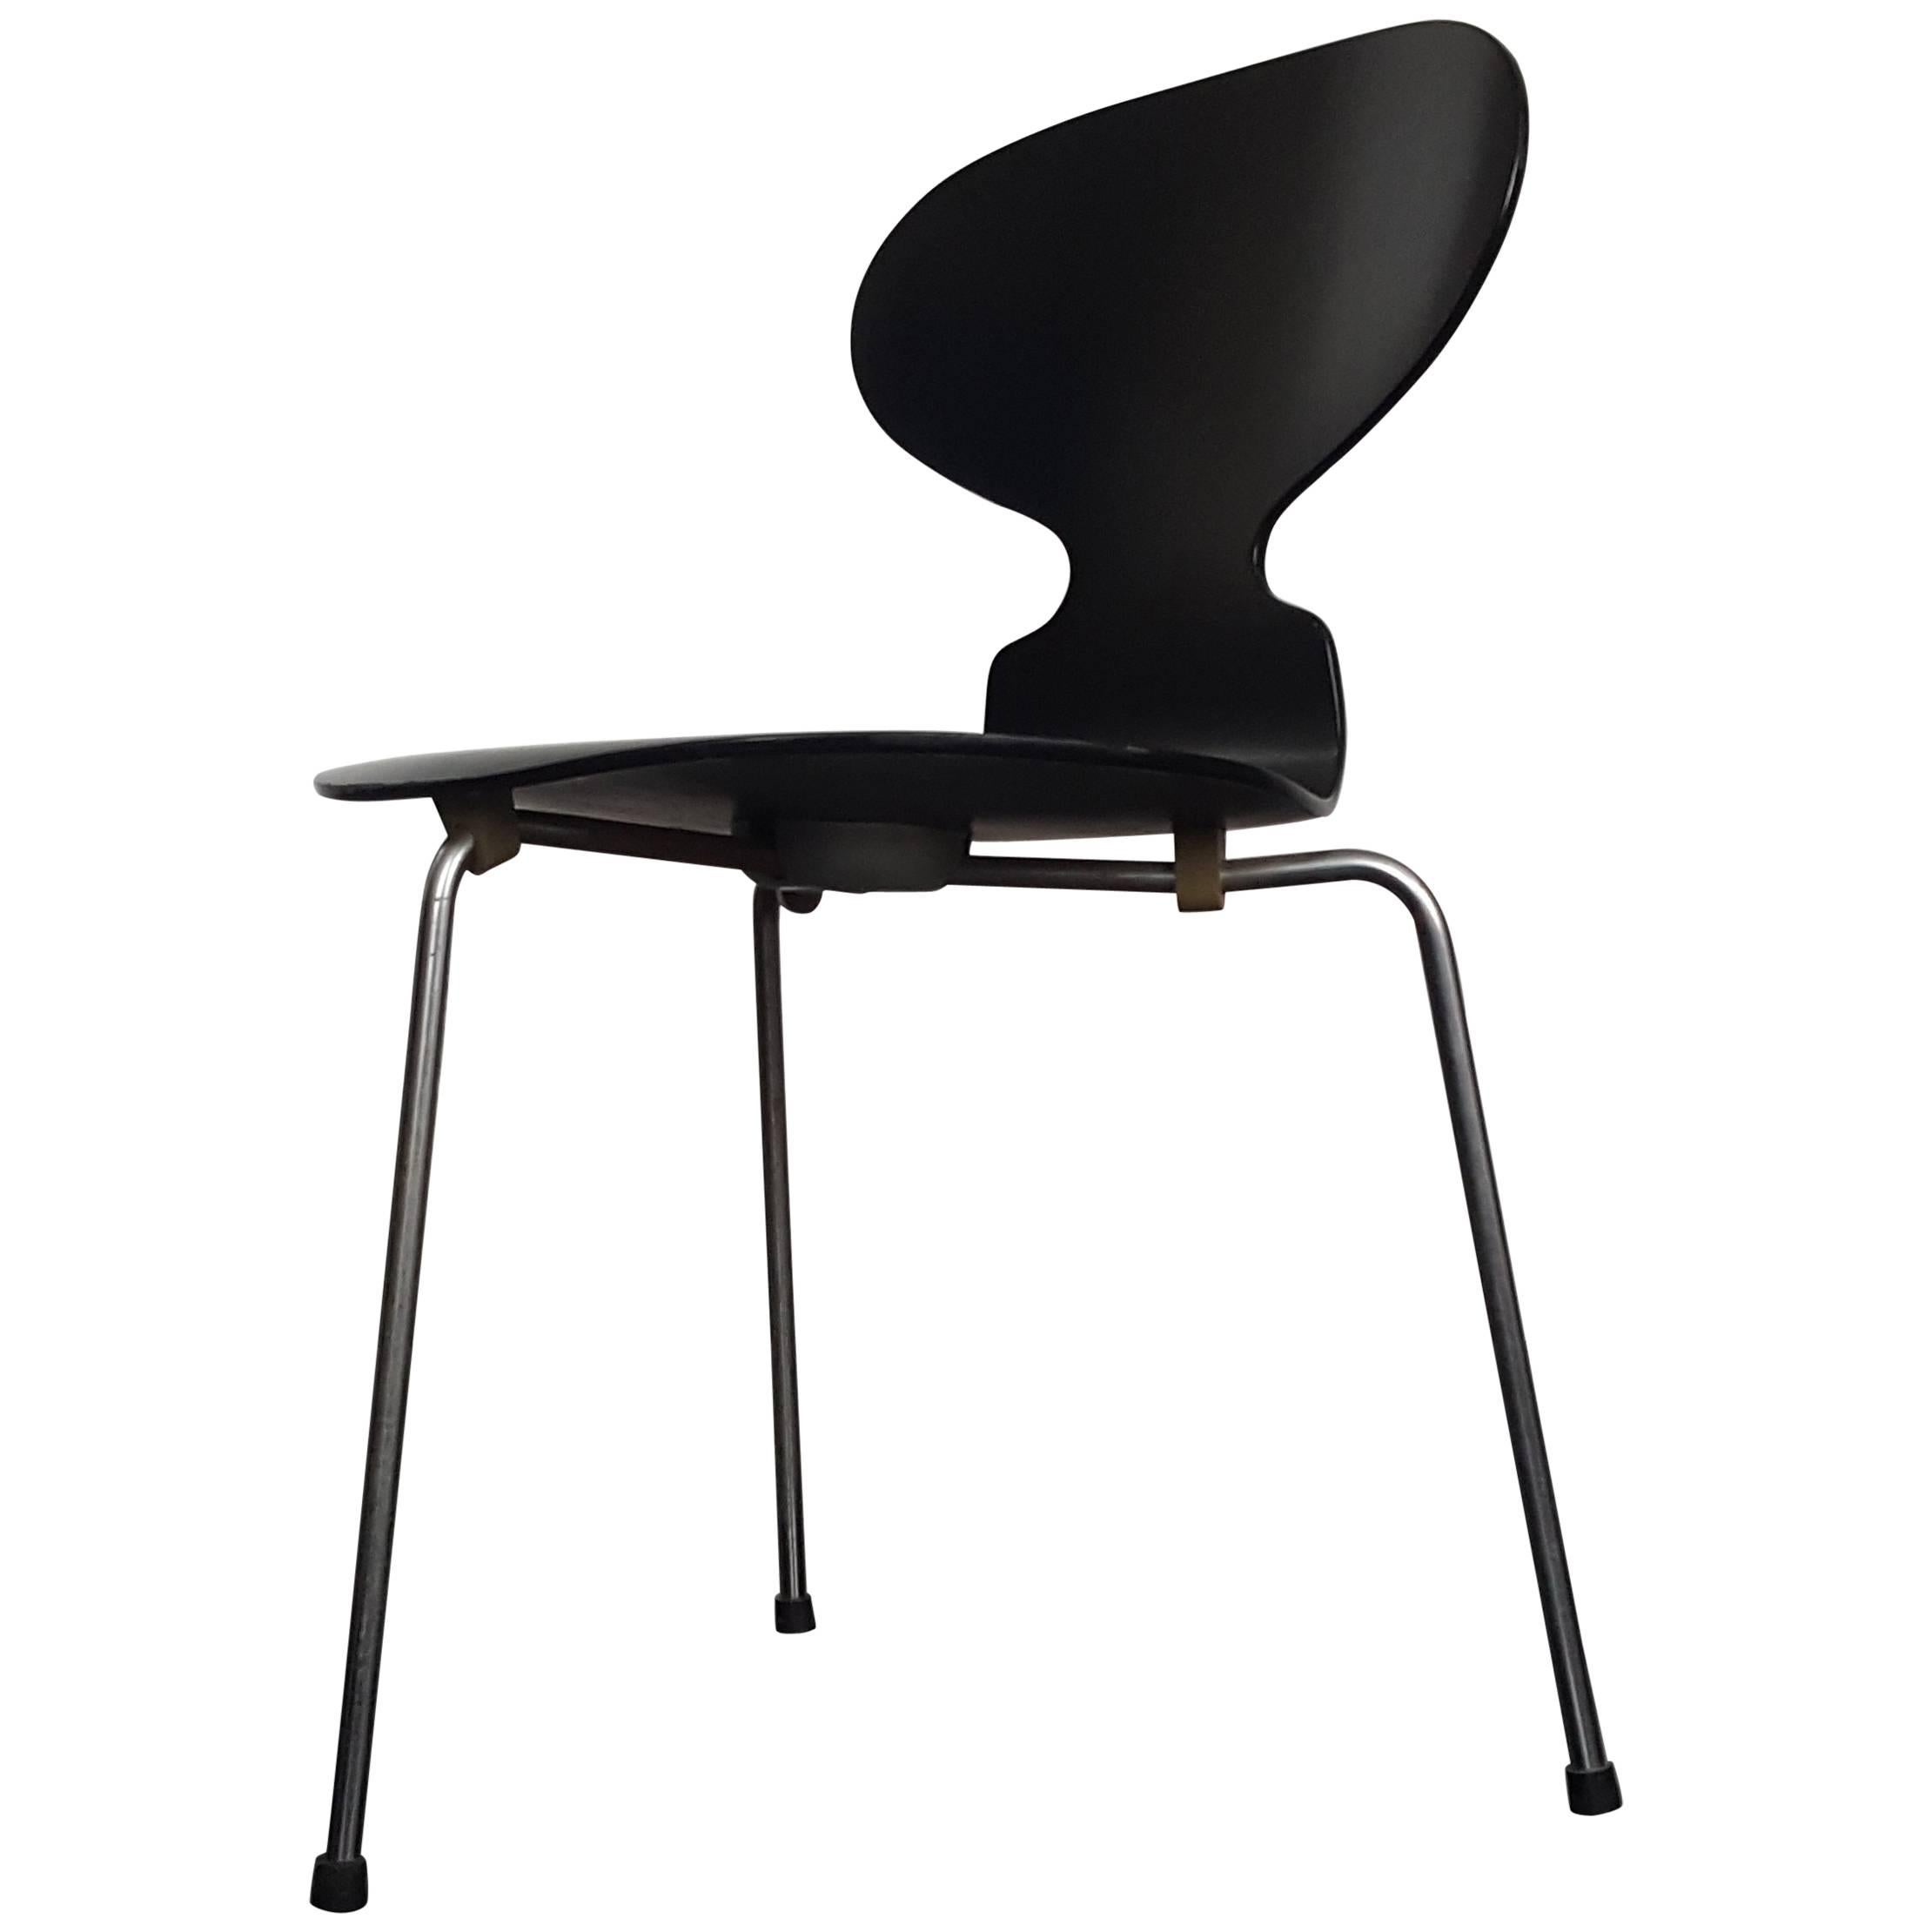 Model 3100 'Ant' Chair by Arne Jacobsen for Fritz Hansen, Designed 1952